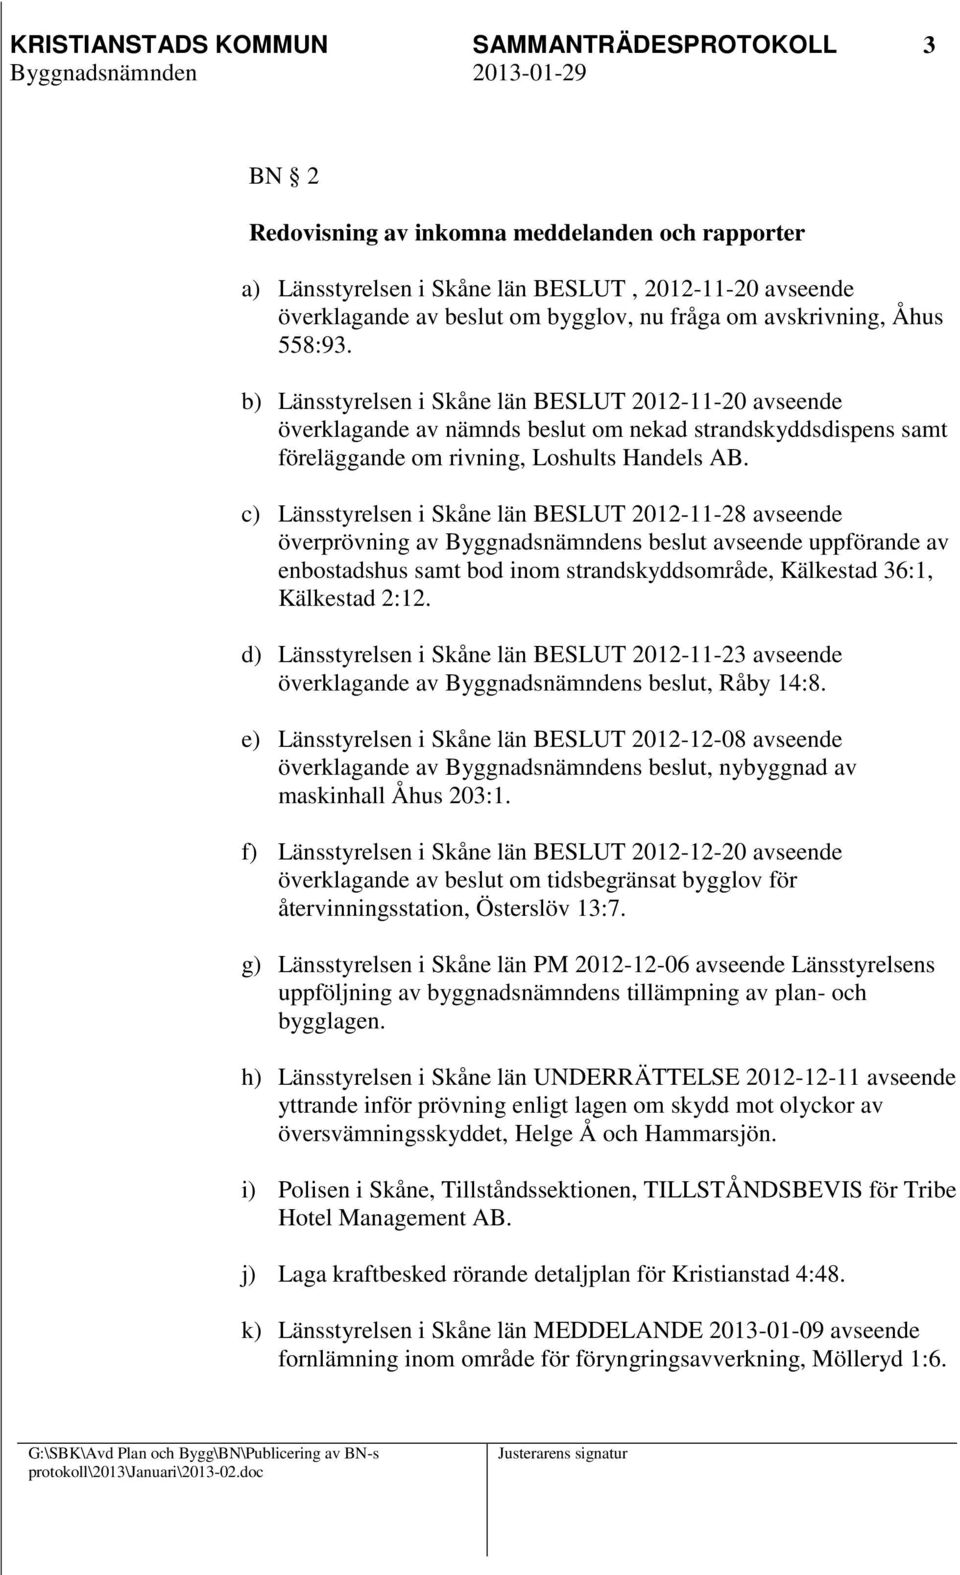 c) Länsstyrelsen i Skåne län BESLUT 2012-11-28 avseende överprövning av avseende uppförande av enbostadshus samt bod inom strandskyddsområde, Kälkestad 36:1, Kälkestad 2:12.